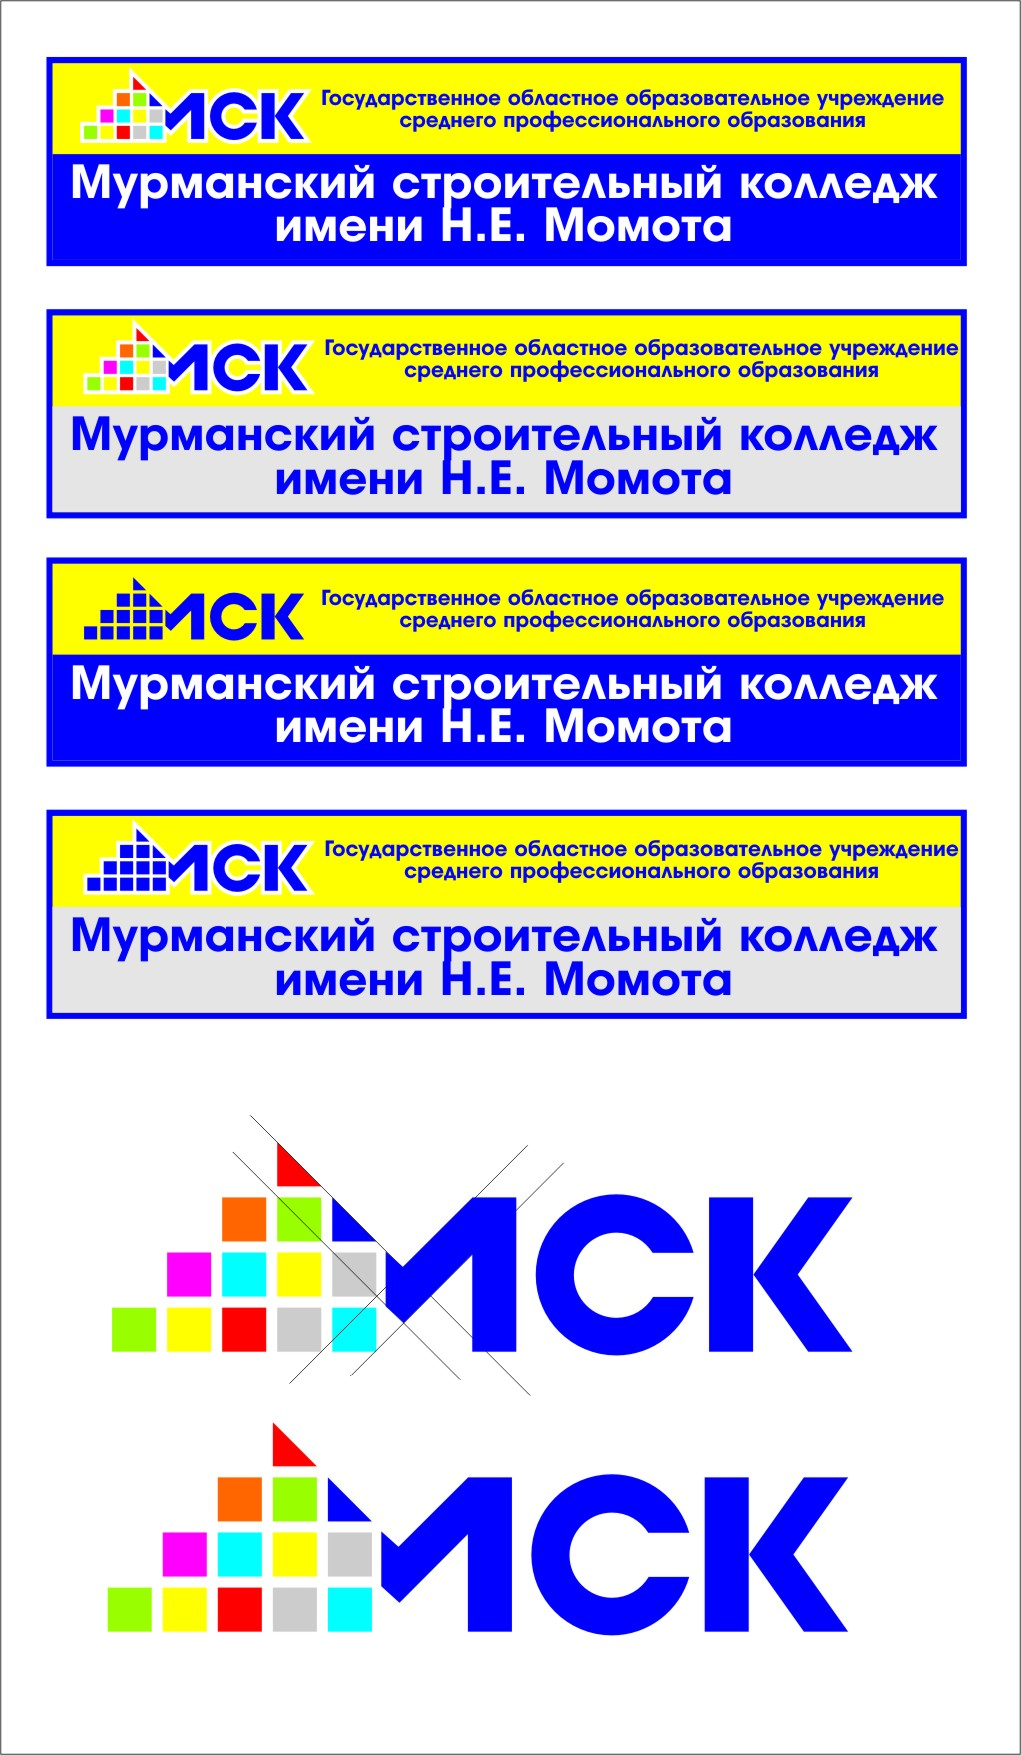 Строительный колледж имени Момота. Мурманский строительный колледж. Колледж Момота Мурманск. Строительный колледж Момота Мурманск.